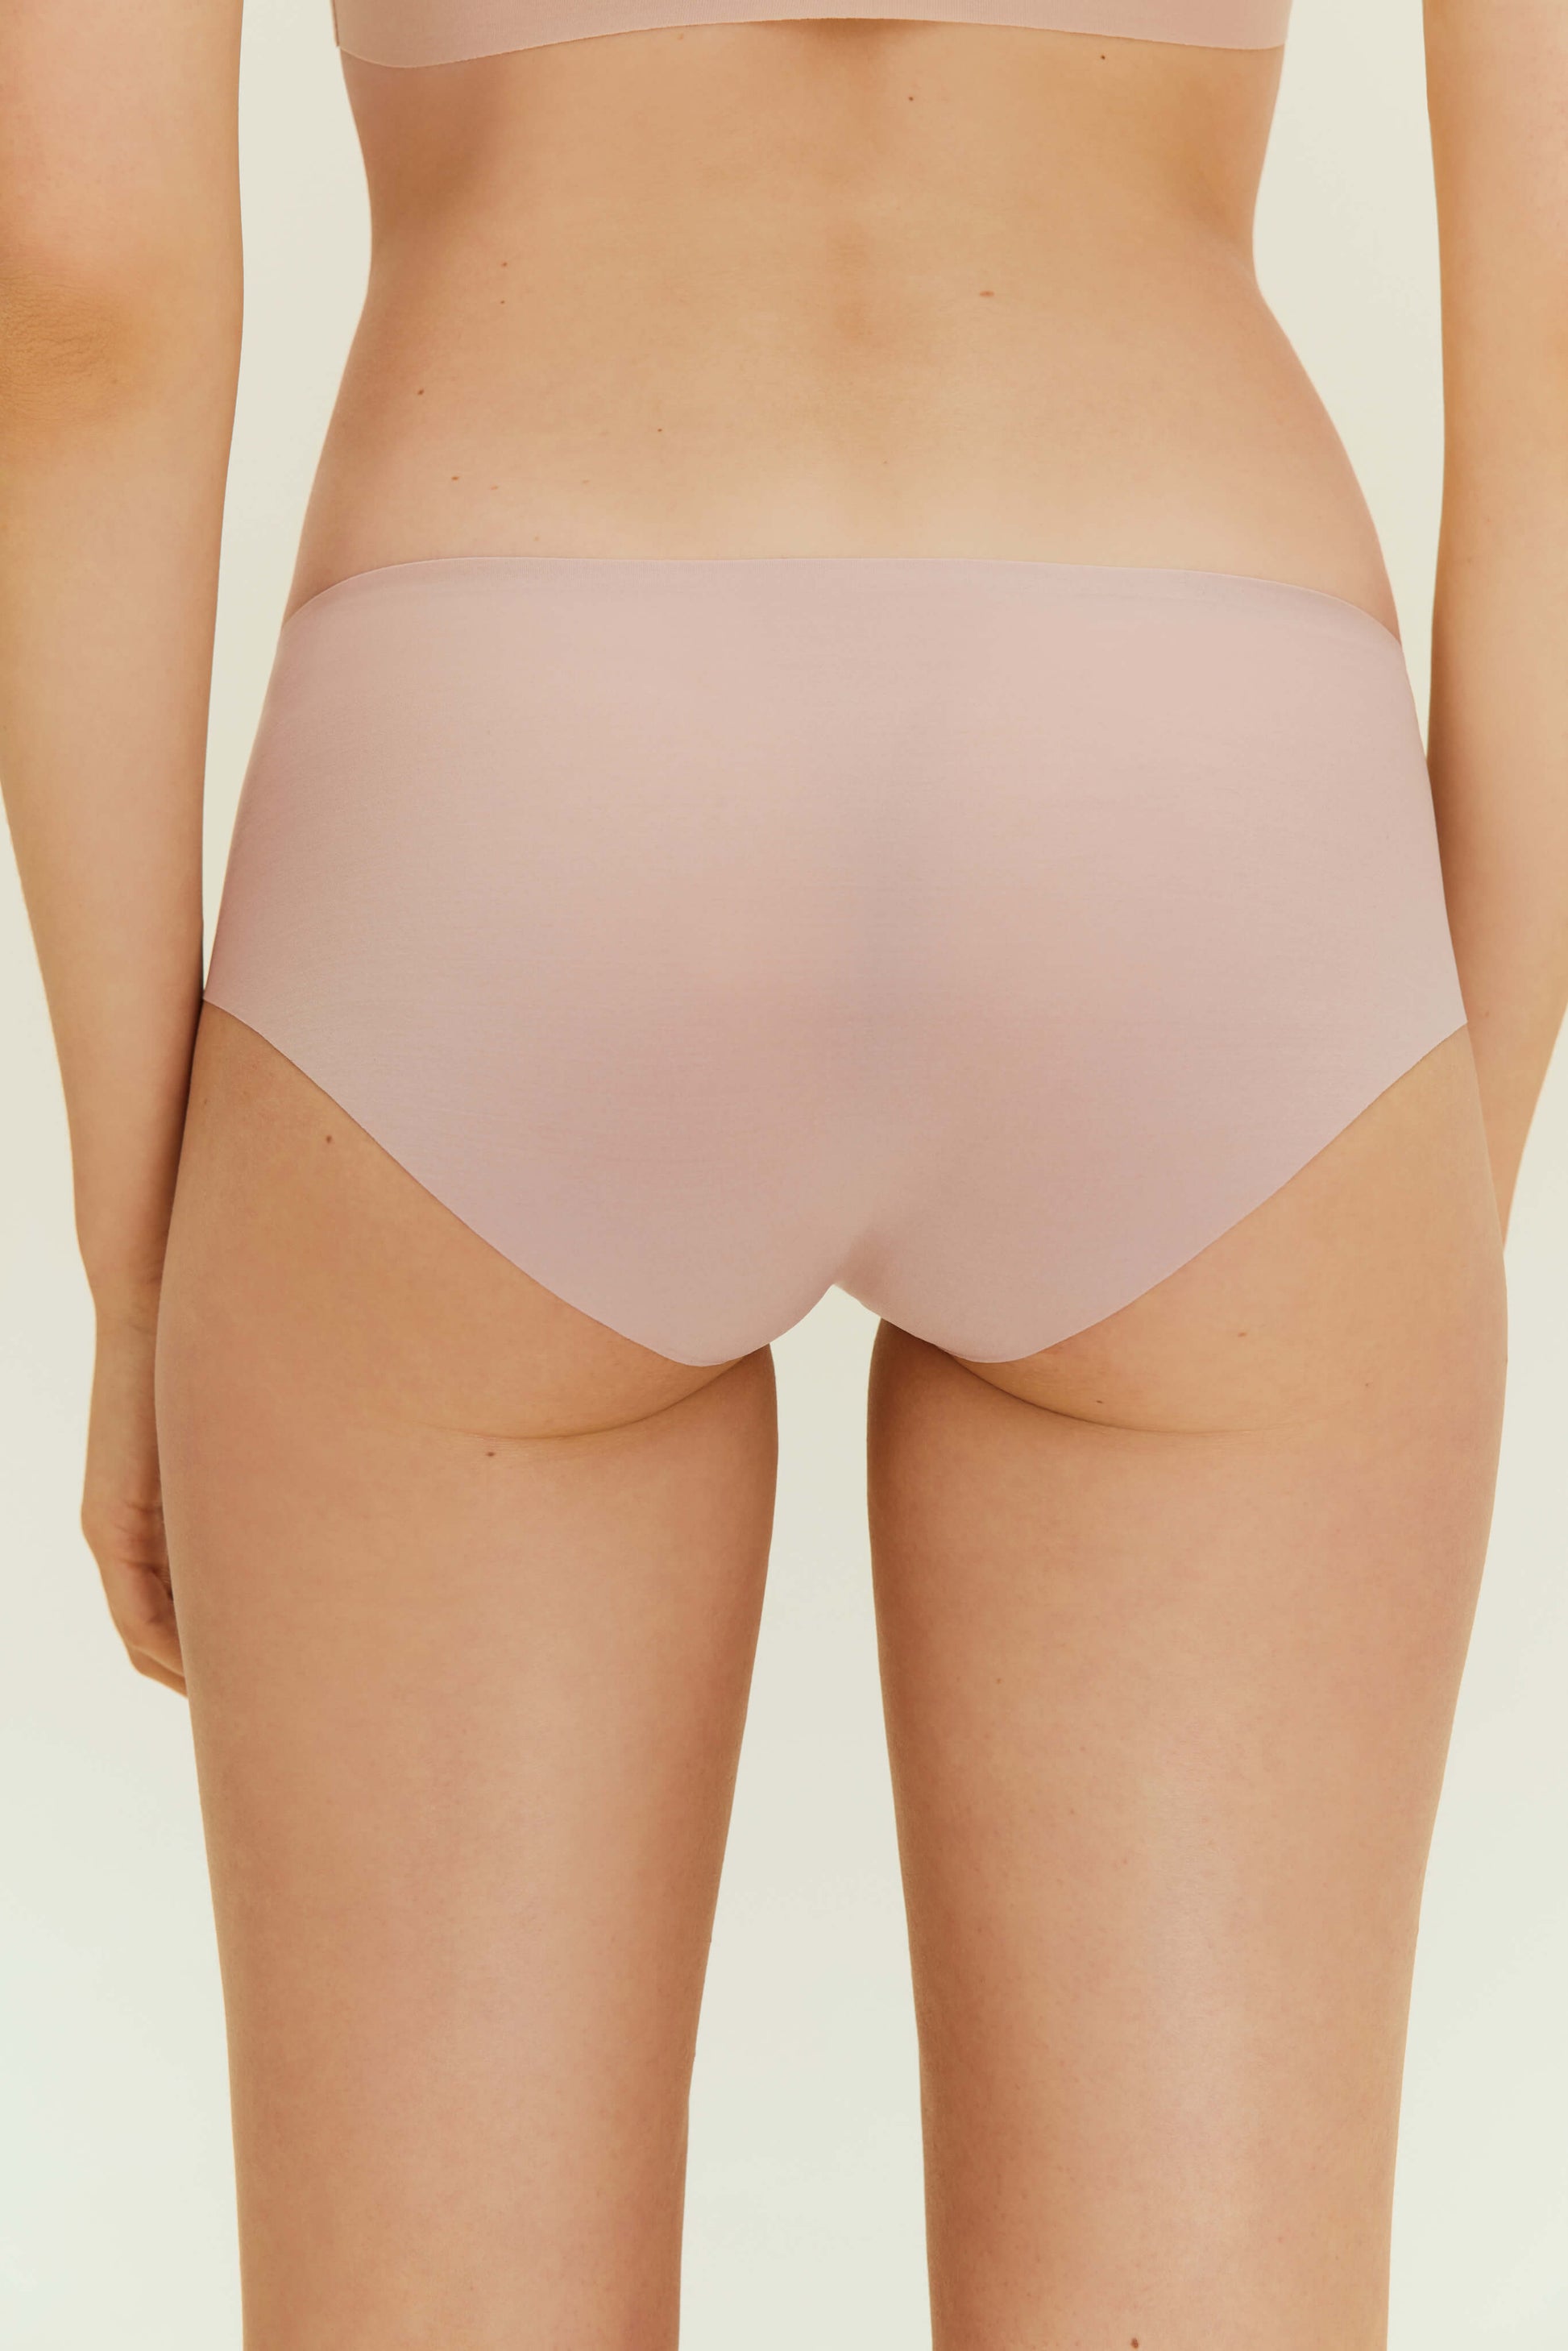 Back view of woman wearing beige underwear